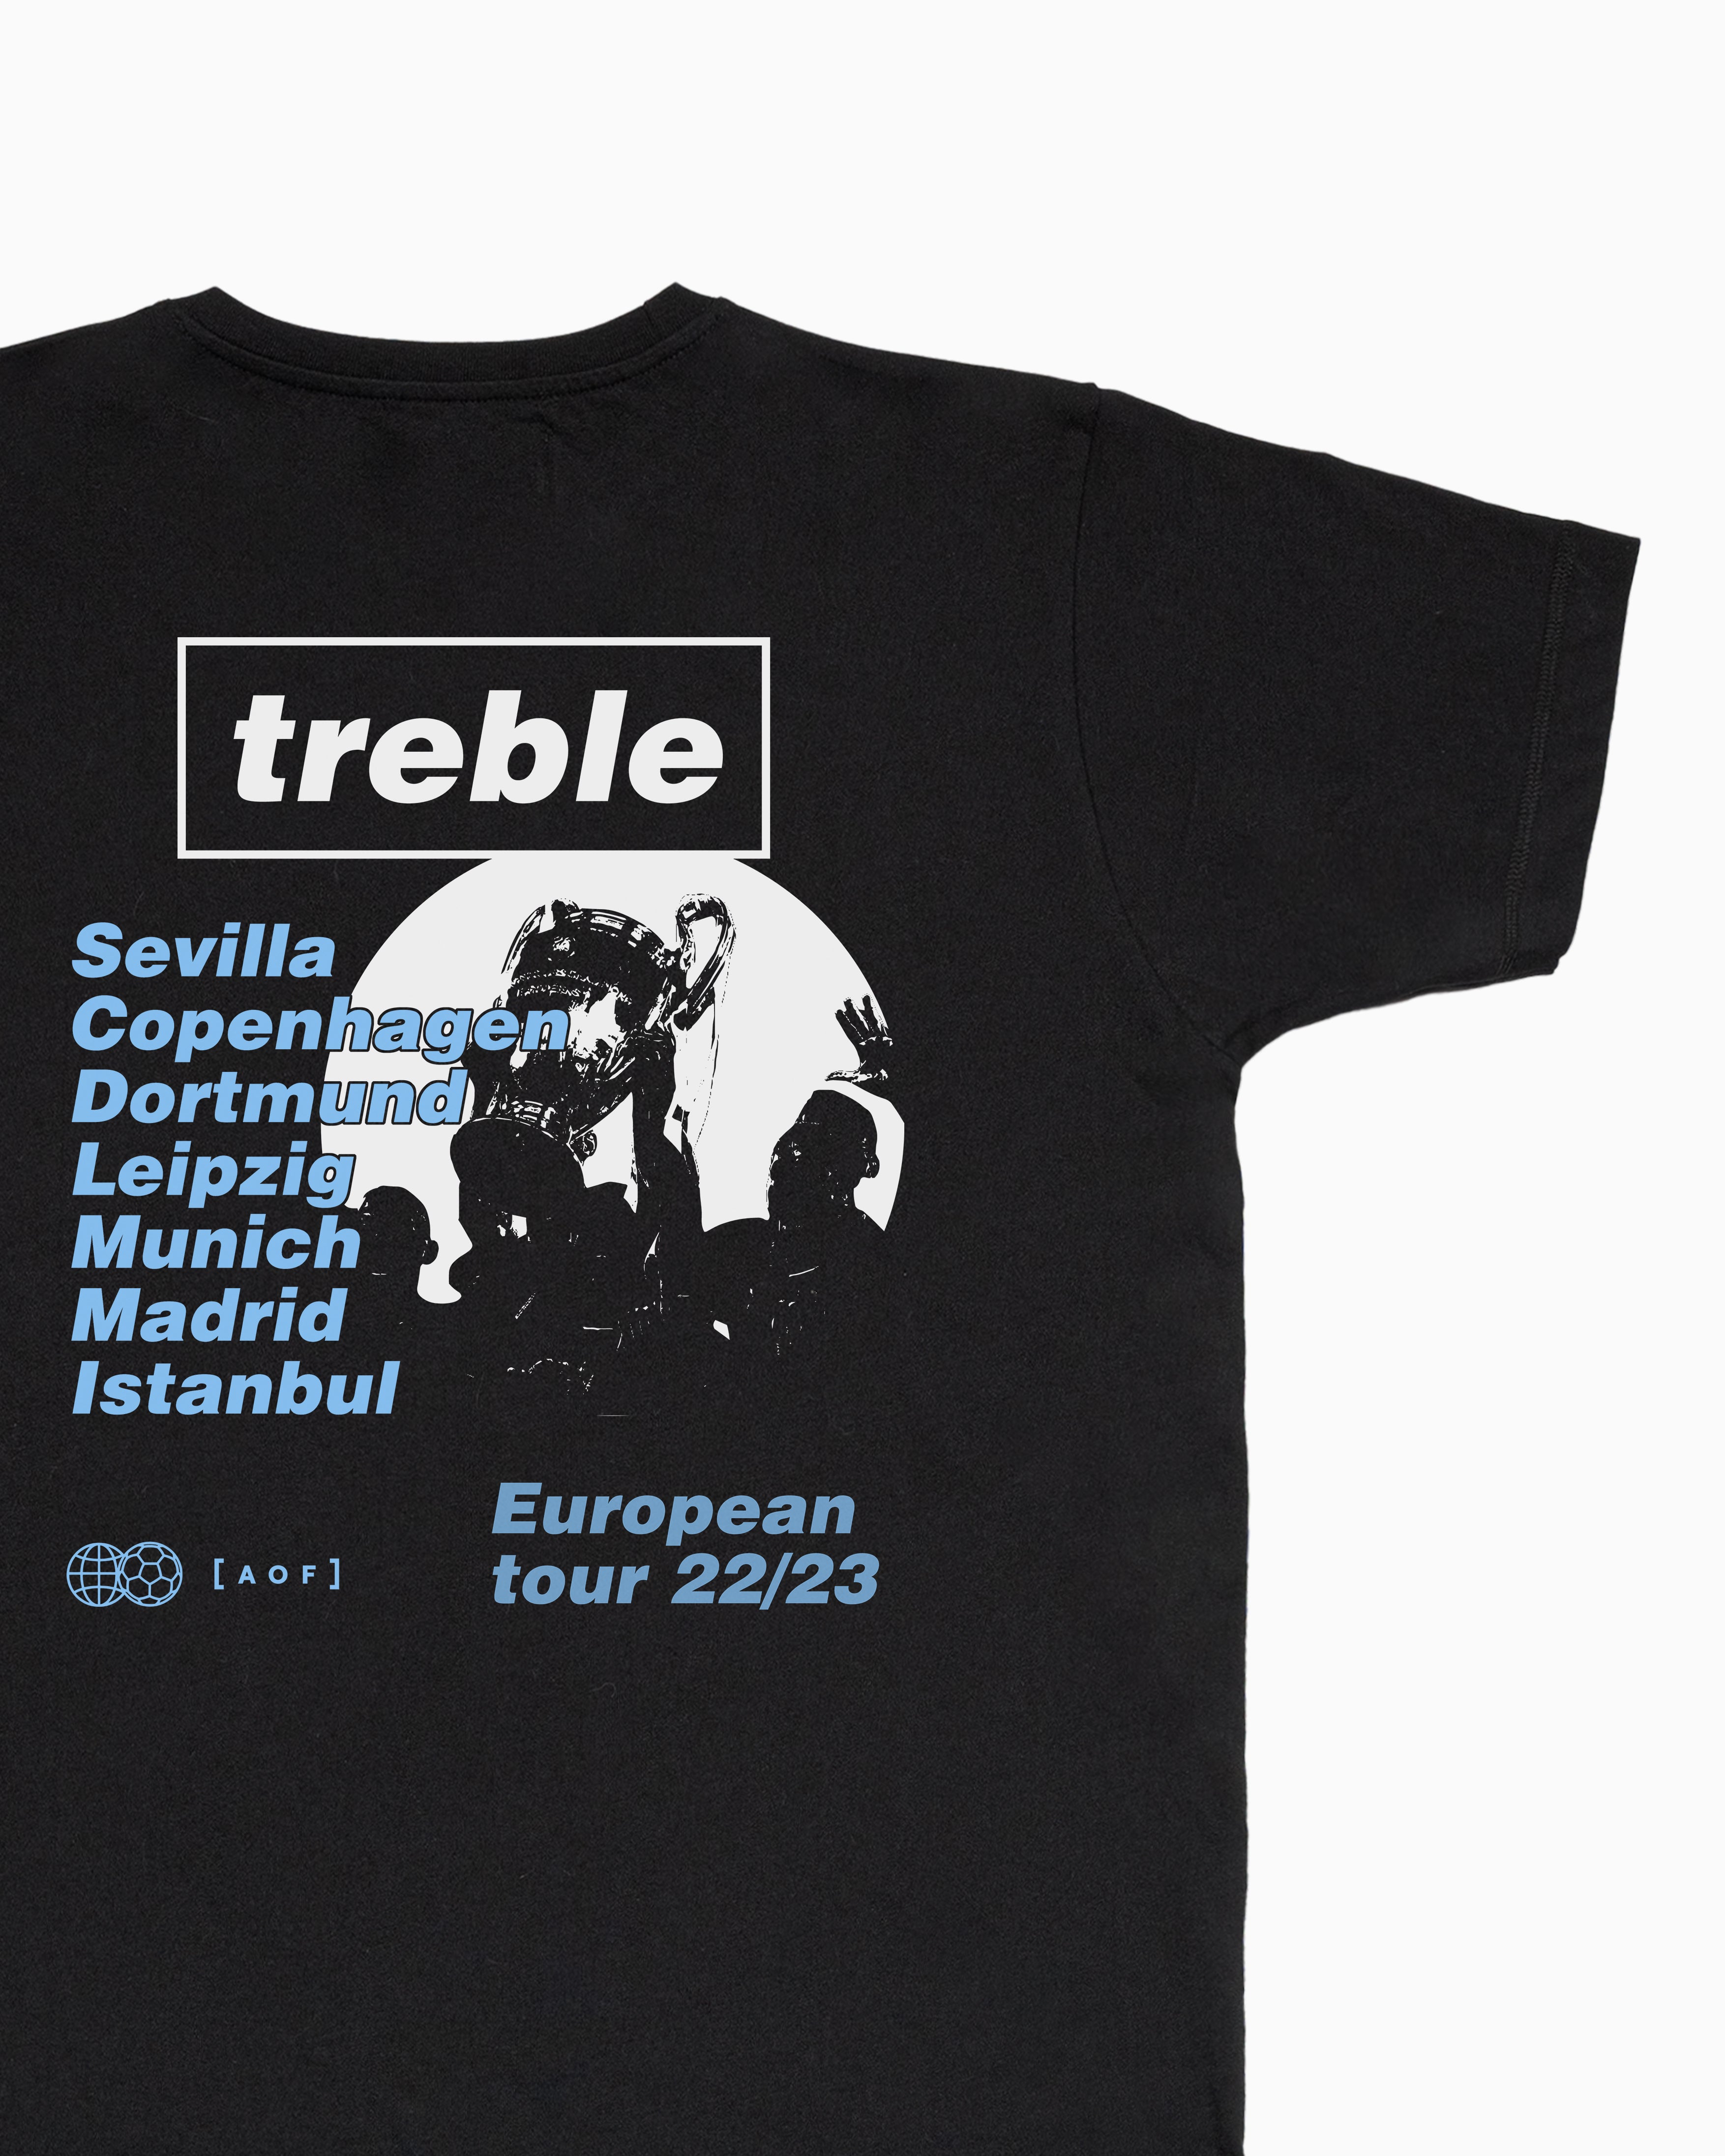 Treble European Tour - Tee or Sweat